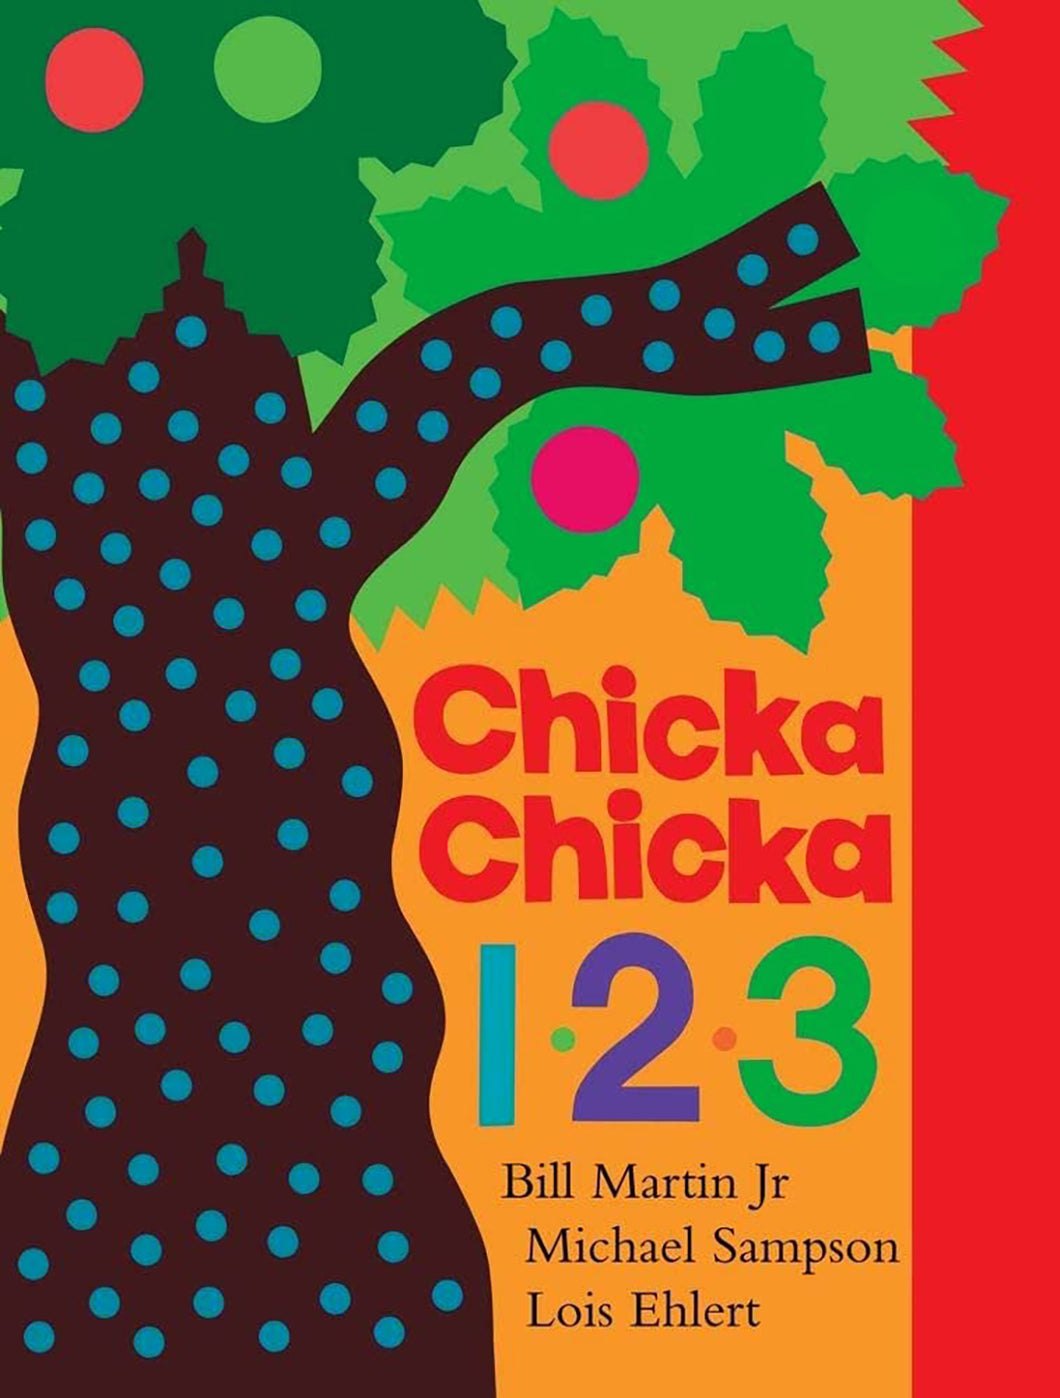 Chicka Chicka 1, 2, 3 by Bill Martin & Michael Sampson / Board Book - NEW BOOK